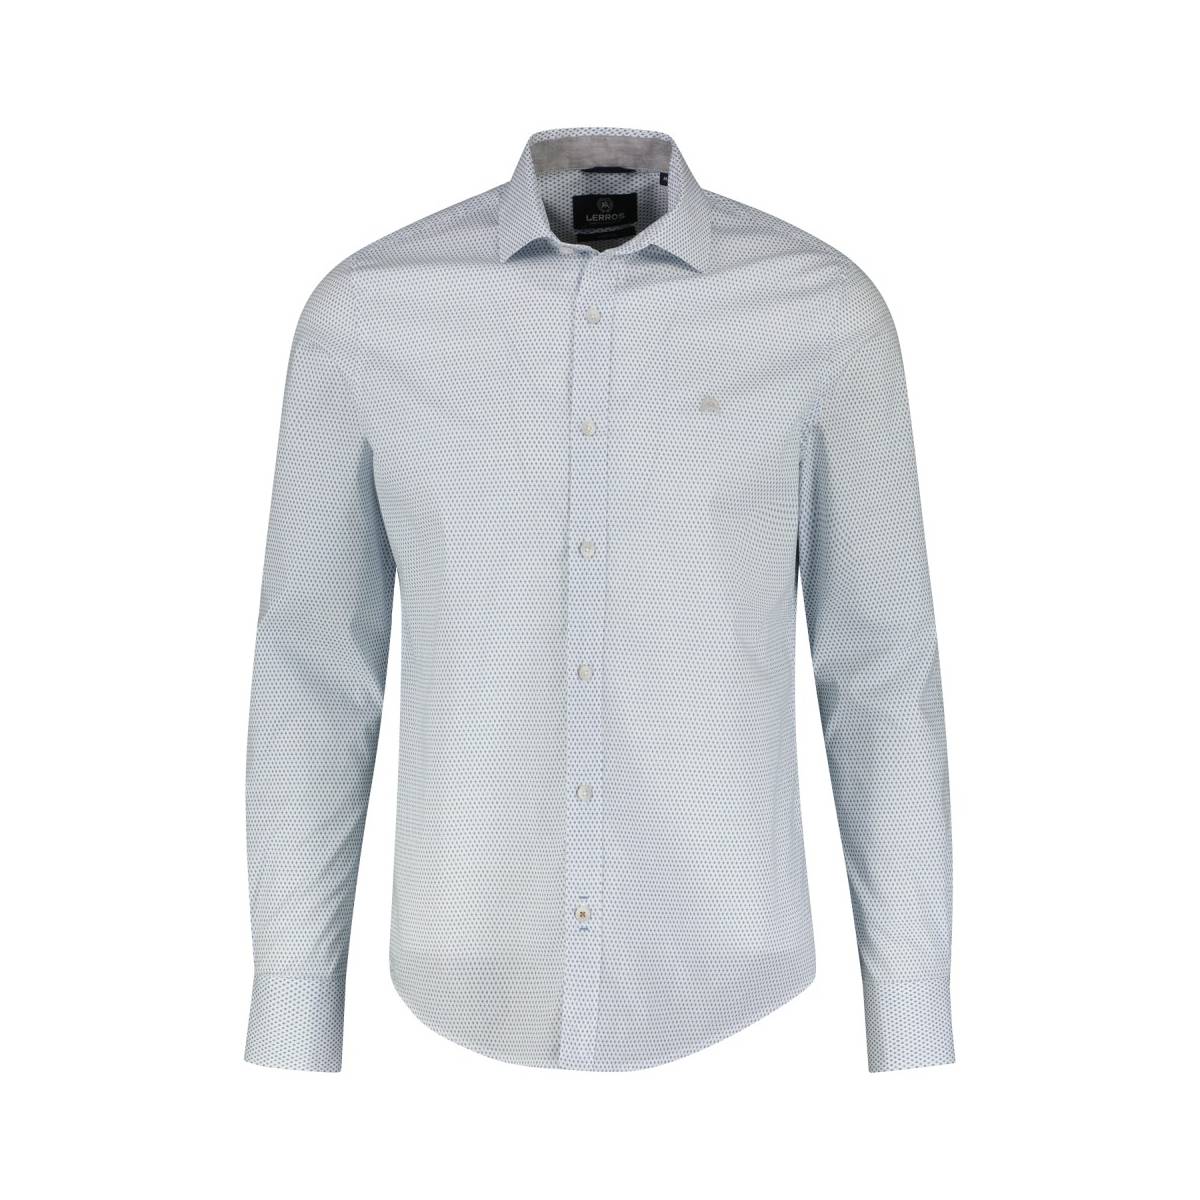 LERROS  hemden wit -  model 23n1343 - Herenkleding hemden wit